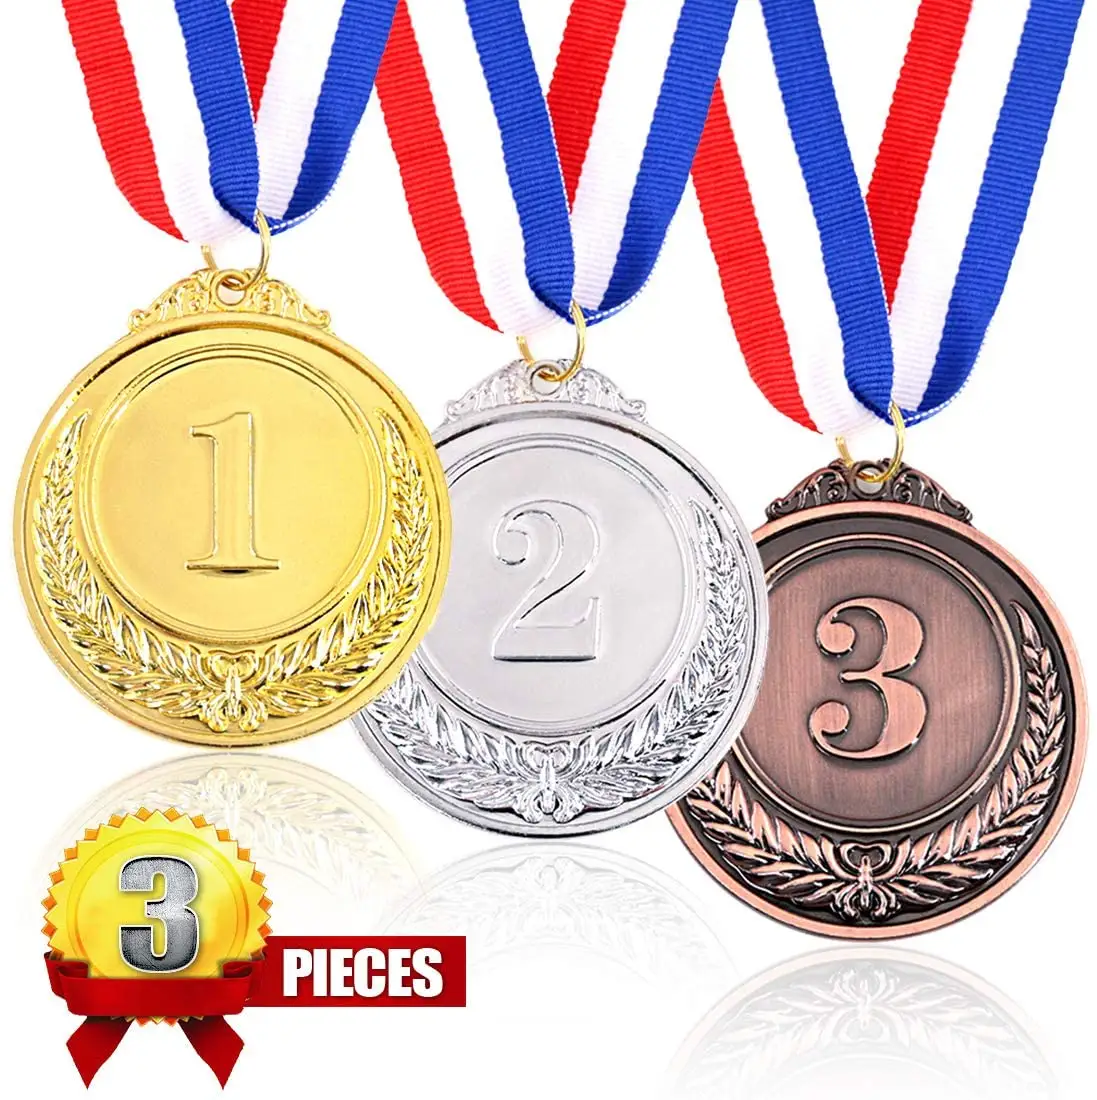 カスタムランニングスイミングダンスヨガスポーツゲームサッカーボクシングゴールドメダル